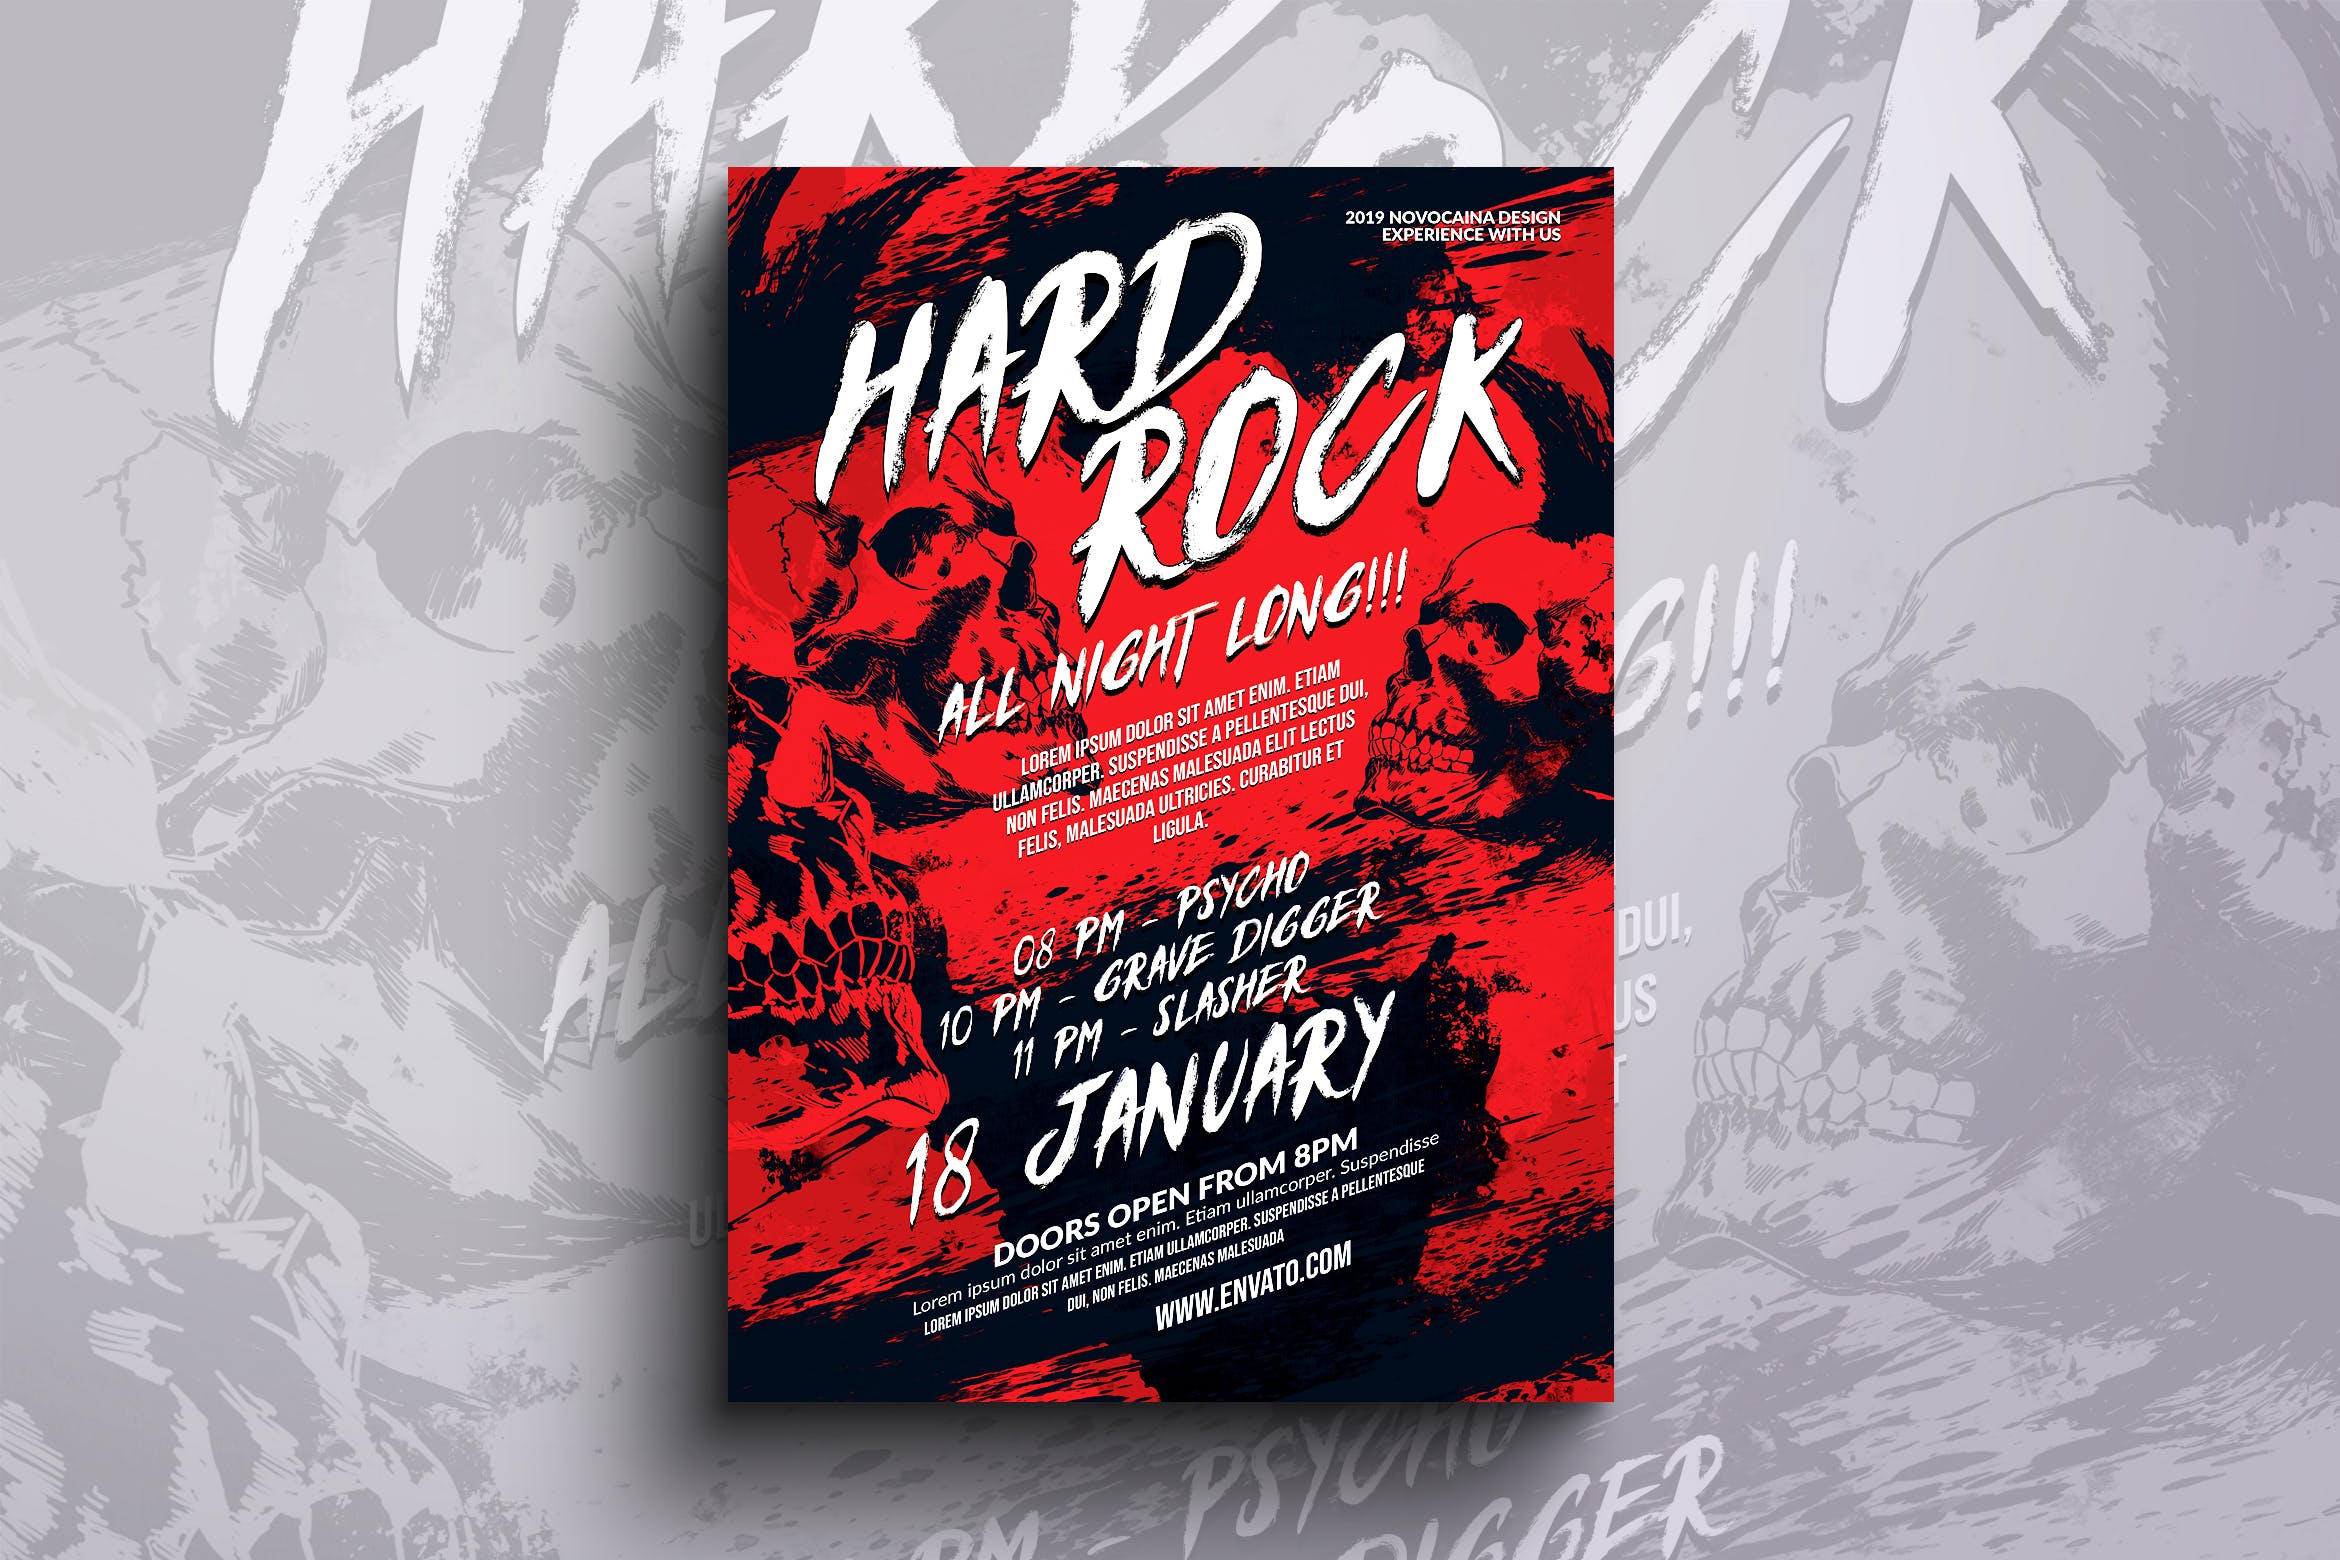 硬摇滚活动海报传单设计模板 Hard Rock Event Flyer & Poster Design插图